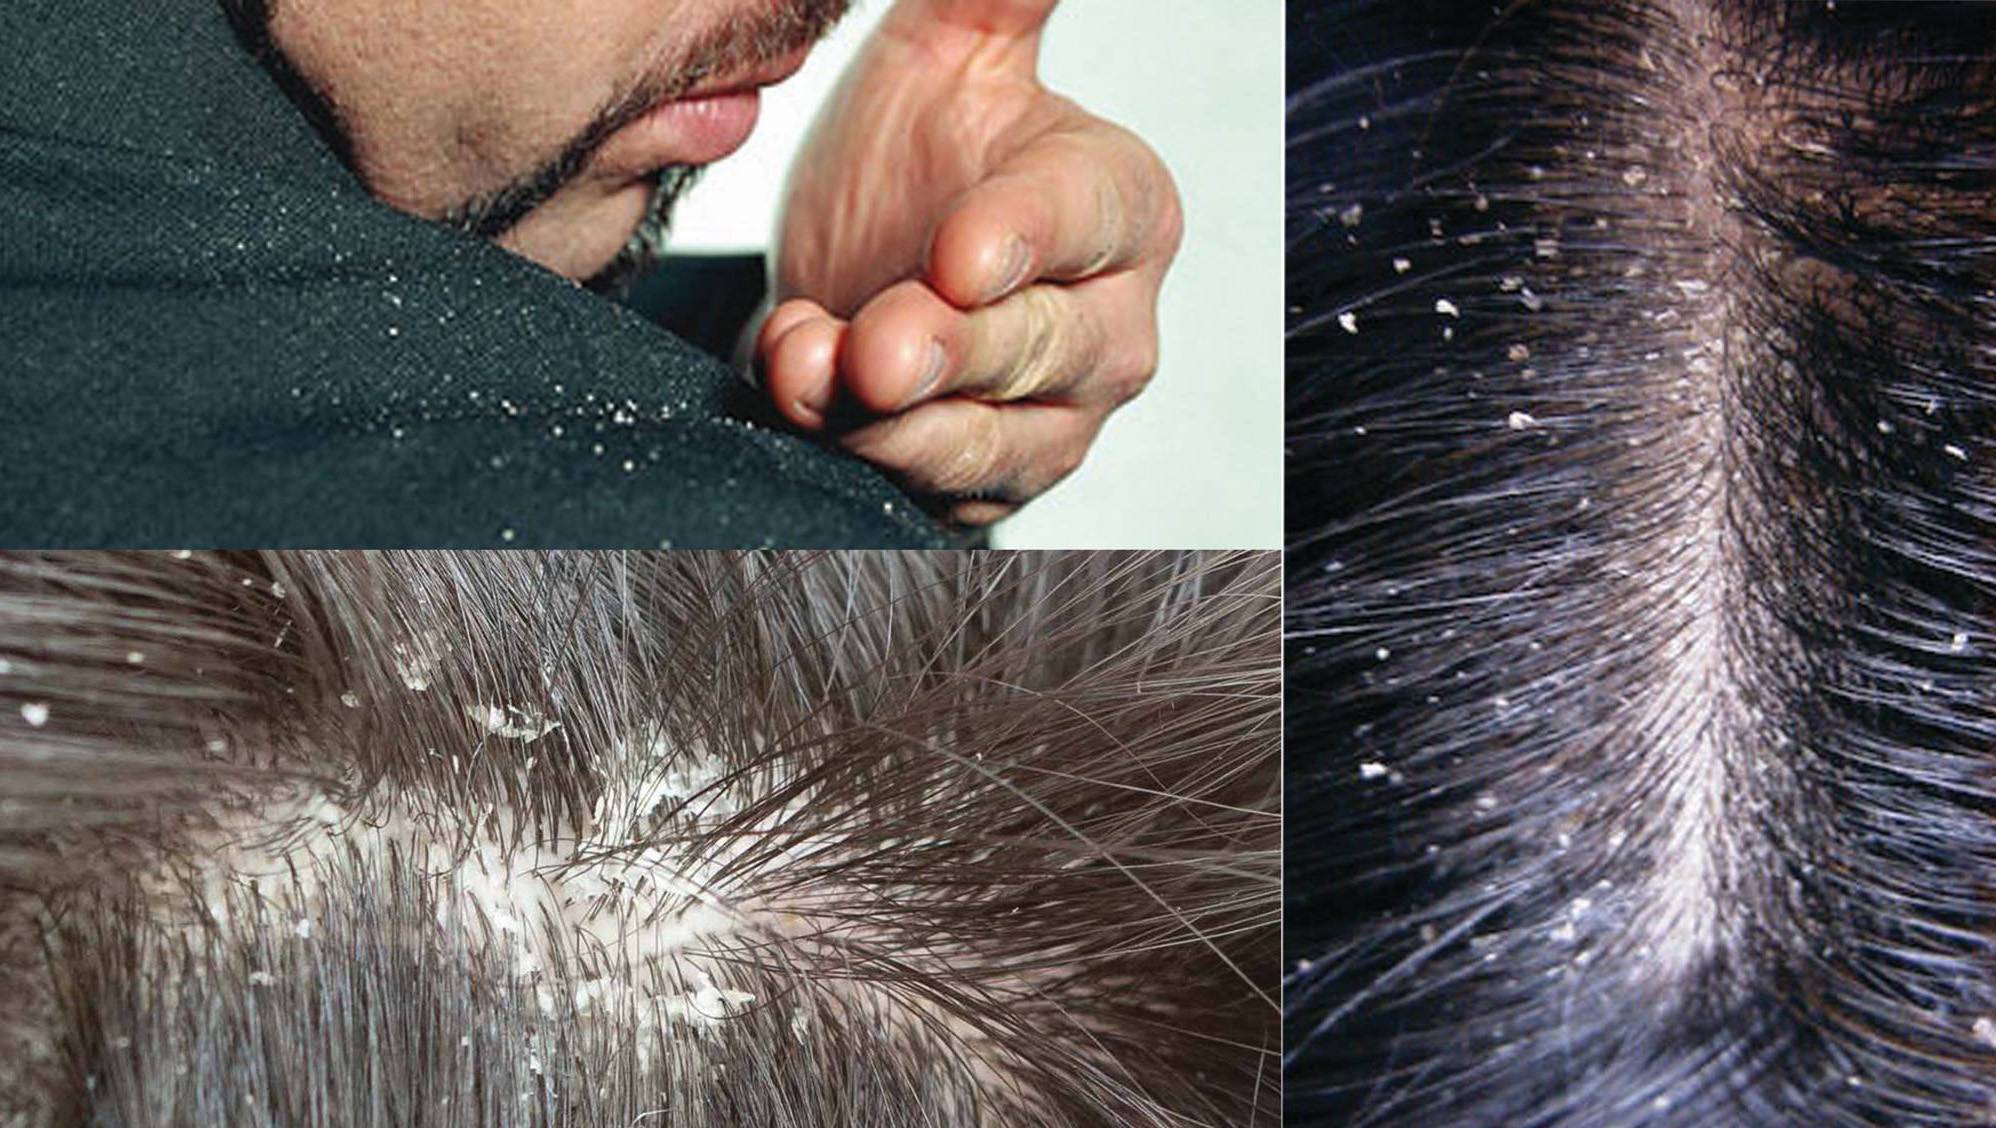 Как исправить генетику волос